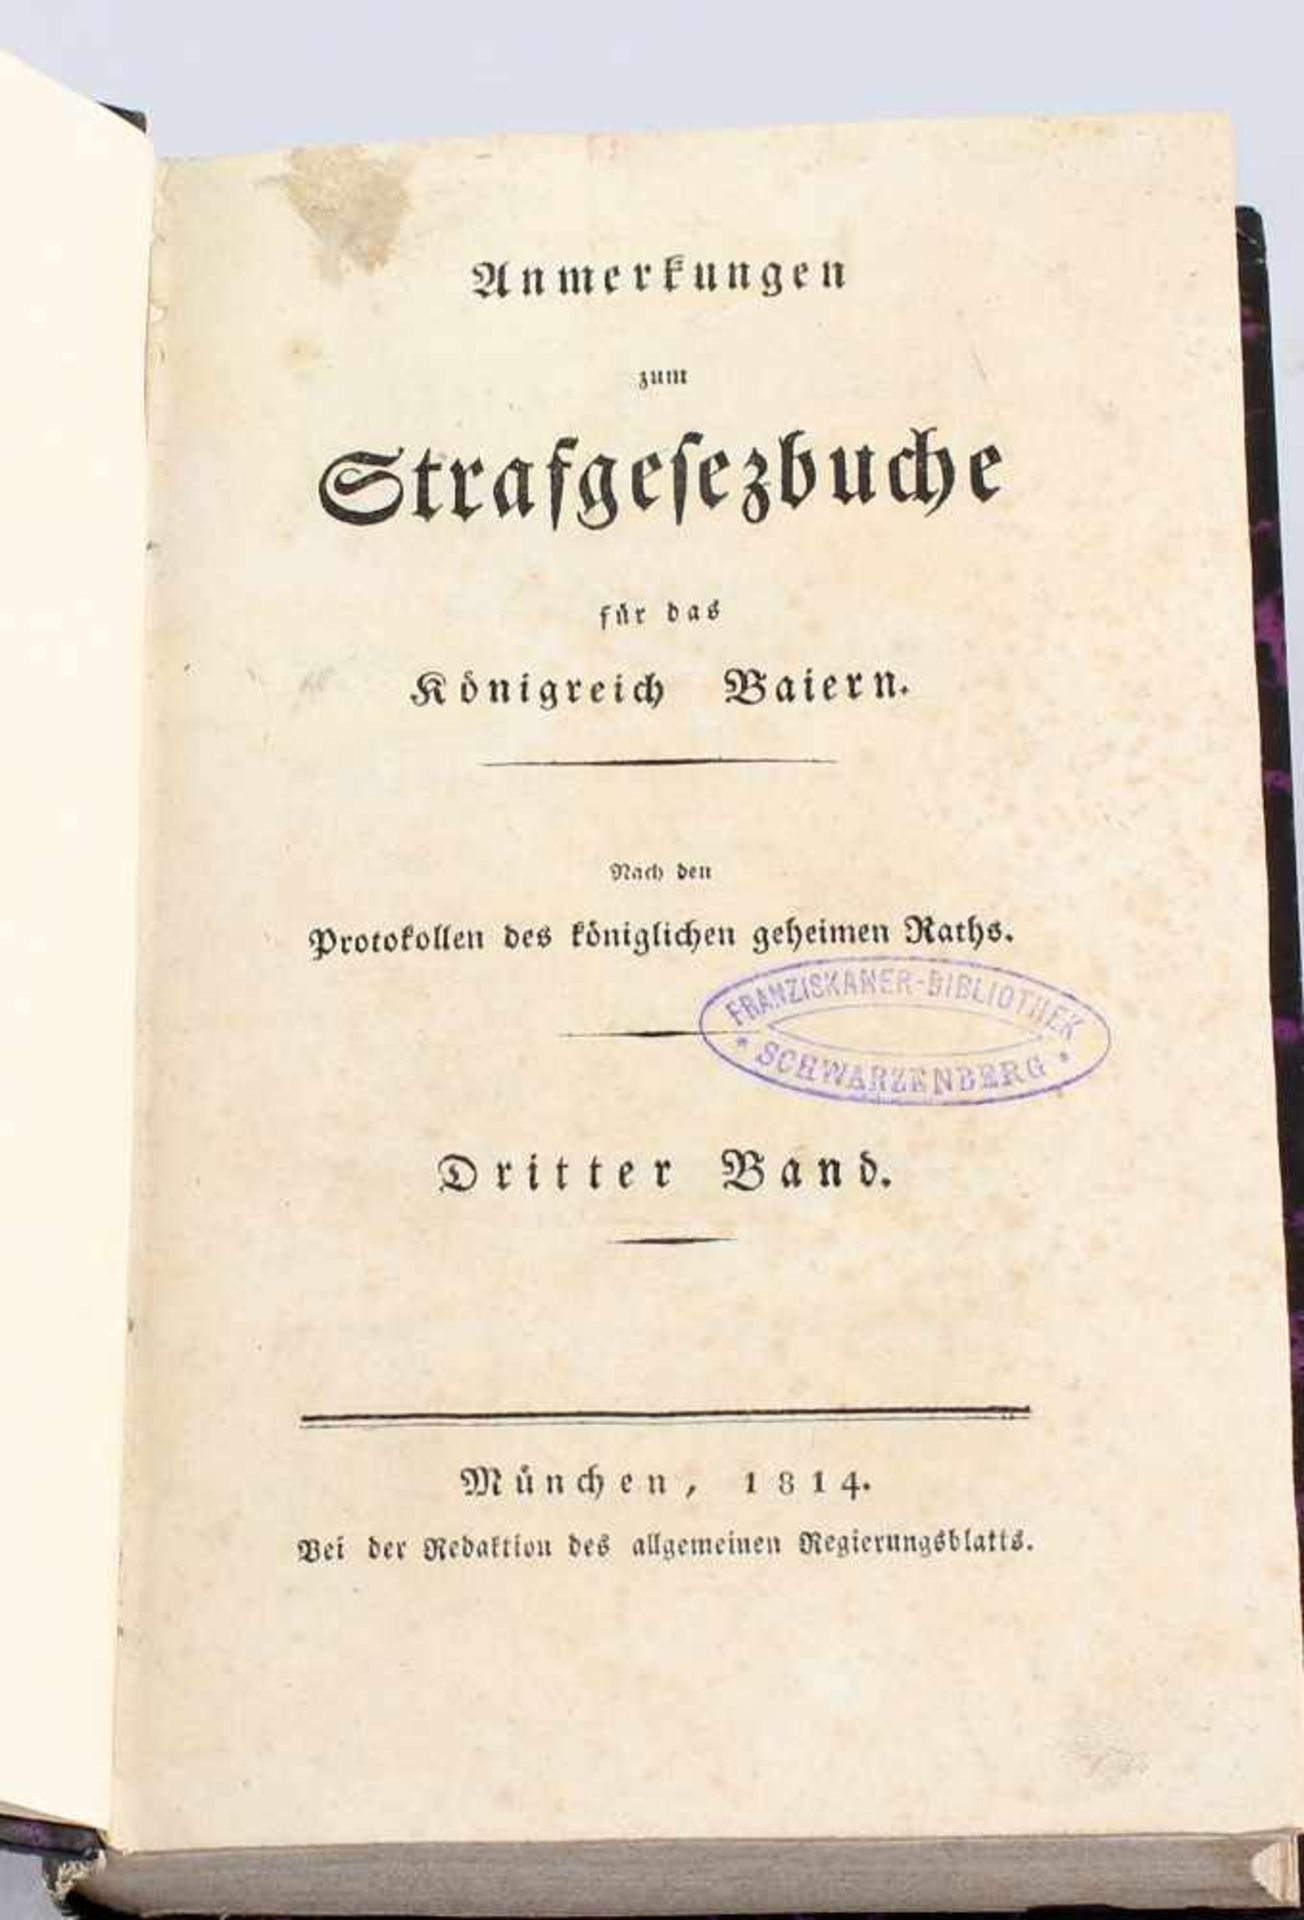 Anmerkungen zum Strafgesezbuche für das Königreich Baiern 1814nach den Protokollen des königlichen - Image 2 of 2